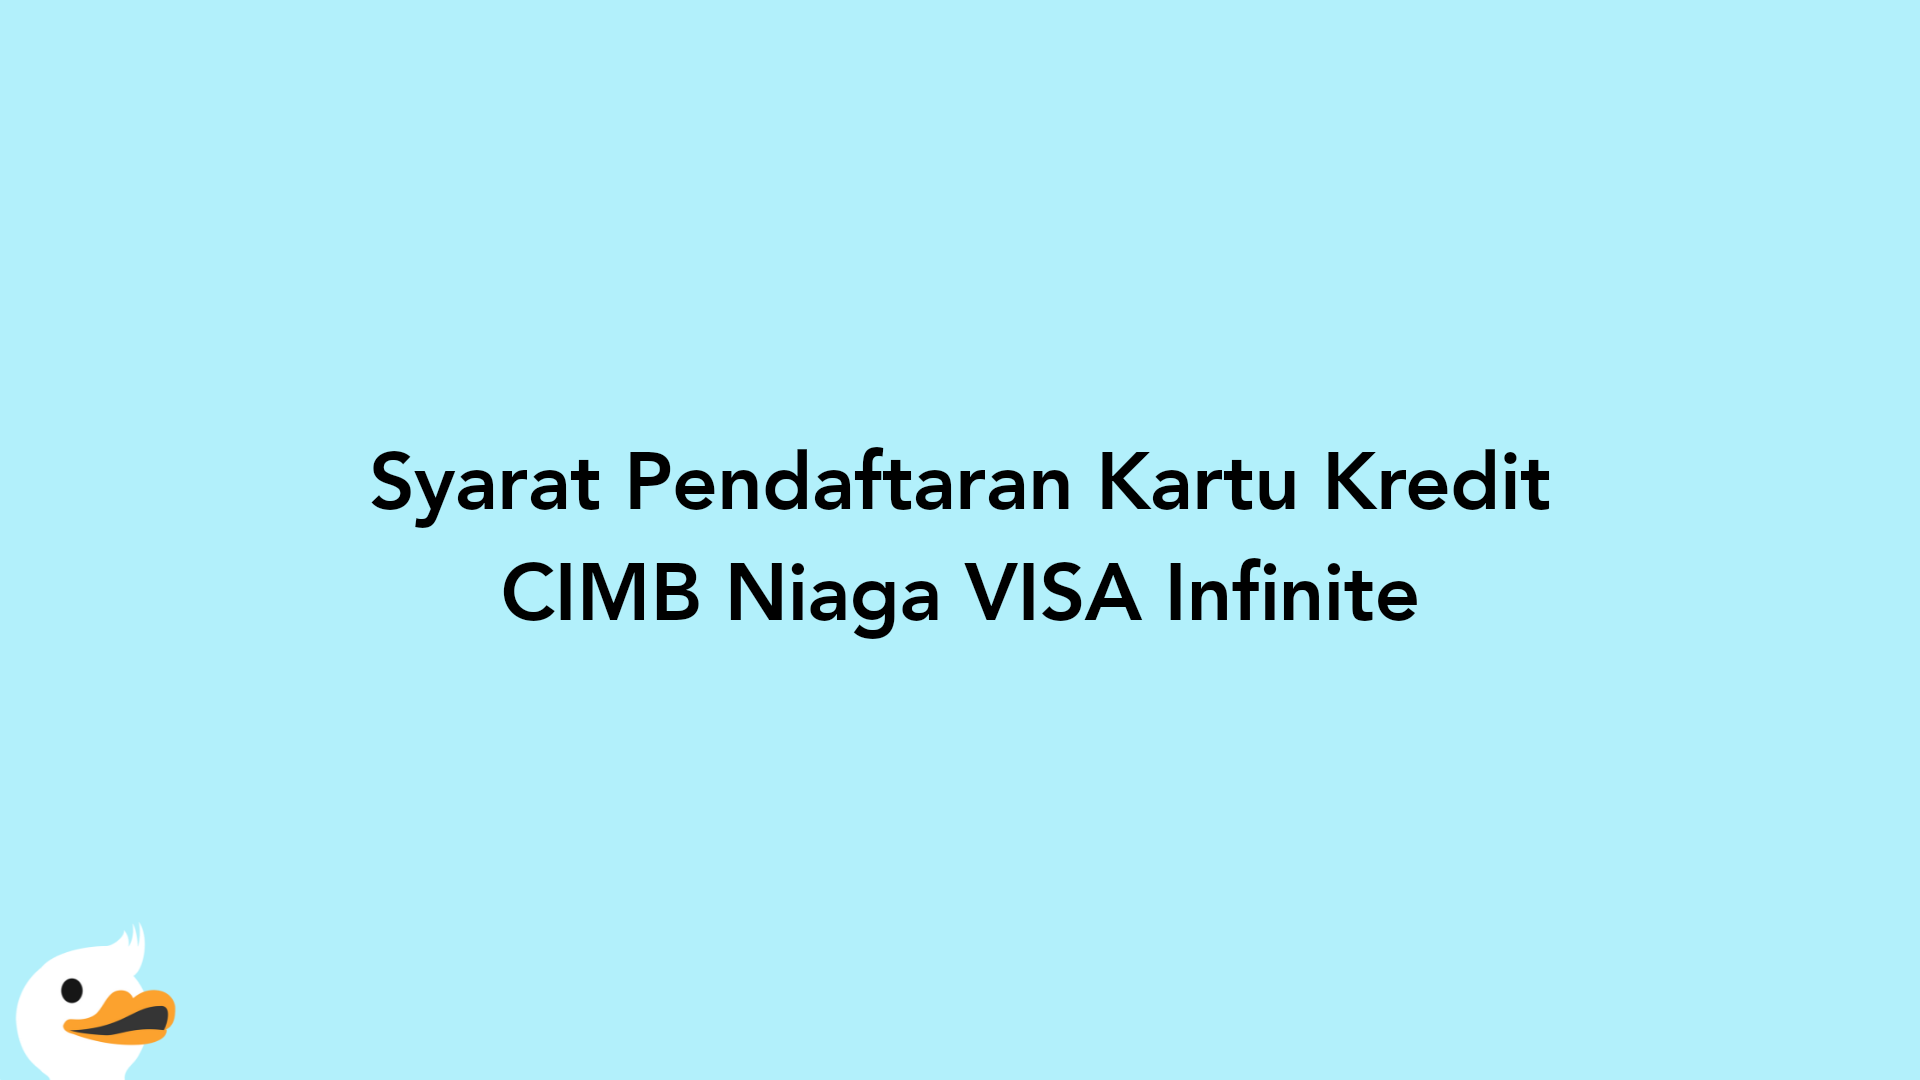 Syarat Pendaftaran Kartu Kredit CIMB Niaga VISA Infinite